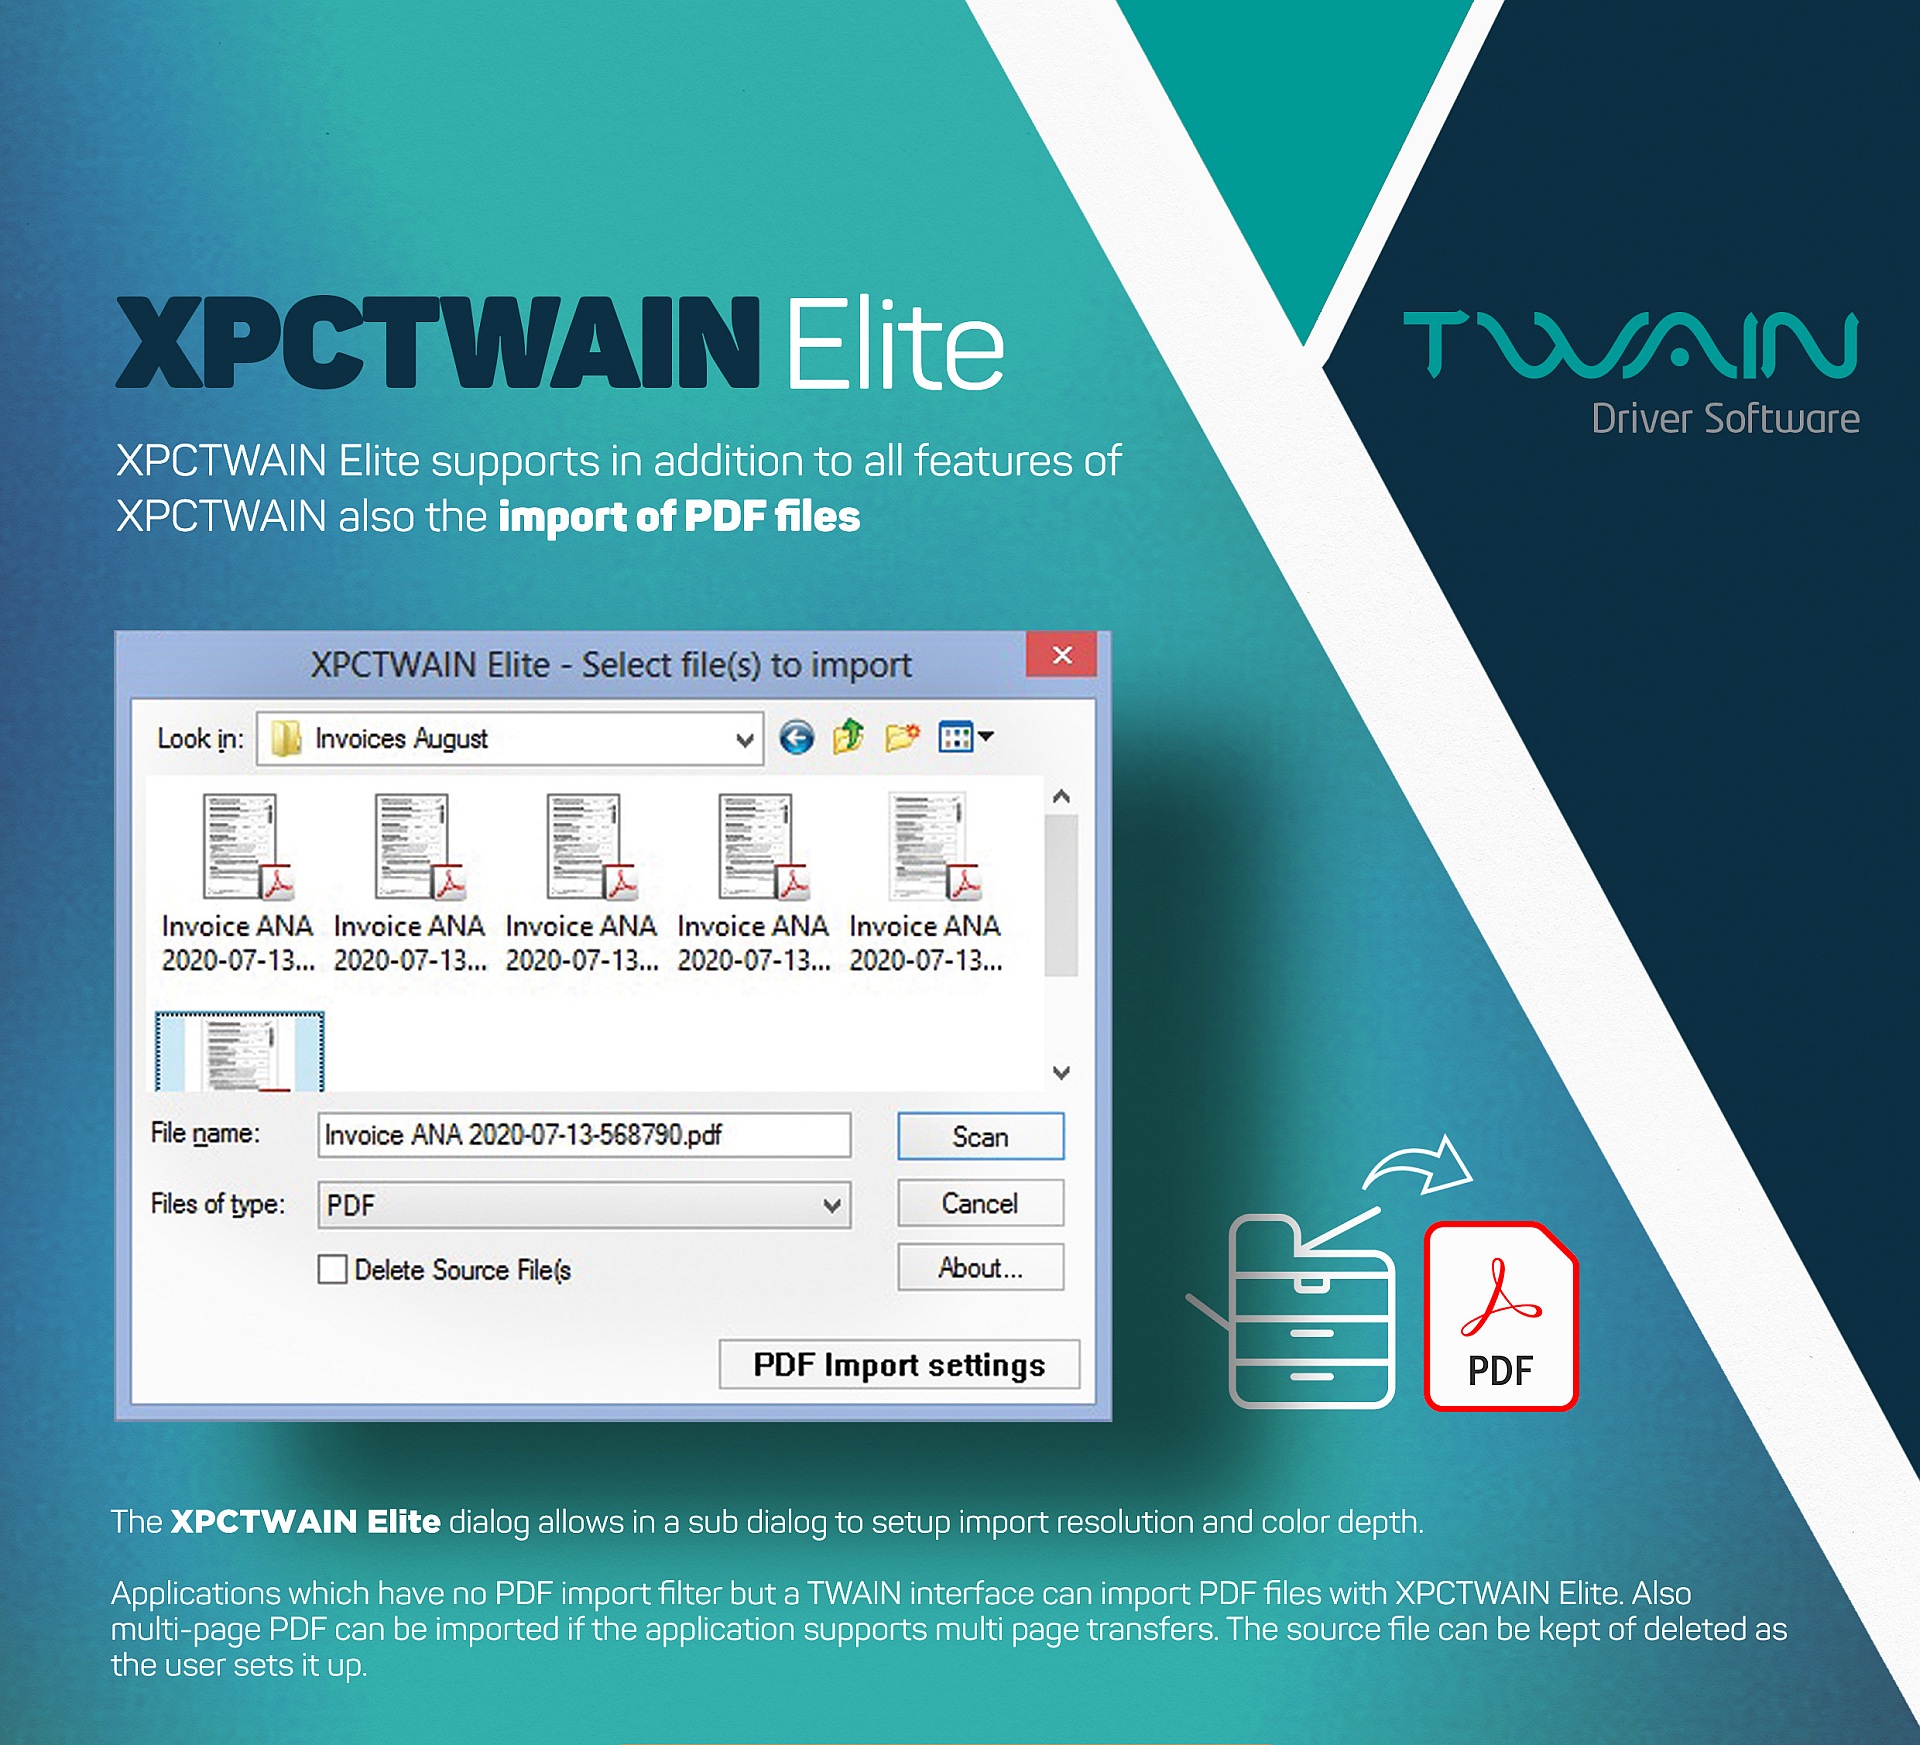 XPCTWAIN Elite ist ein virtueller TWAIN-Treiber, der es Anwendungen, die keinen PDF-Importfilter haben, erm�glicht, PDF f�r mehrseitige TIFF-Dateien als Bilder �ber die TWAIN-Standardschnittstelle zu lesen. 
								XPCTWAIN Elite est un pilote TWAIN virtuel qui permet aux applications qui n'ont pas de filtre d'importation PDF de lire les fichiers TIFF multipages comme des images via l'interface standard TWAIN.
								XPCTWAIN Elite es un controlador TWAIN virtual que permite a las aplicaciones que no tienen filtro de importaci�n de PDF leer archivos TIFF multip�gina como im�genes a trav�s de la interfaz est�ndar TWAIN.